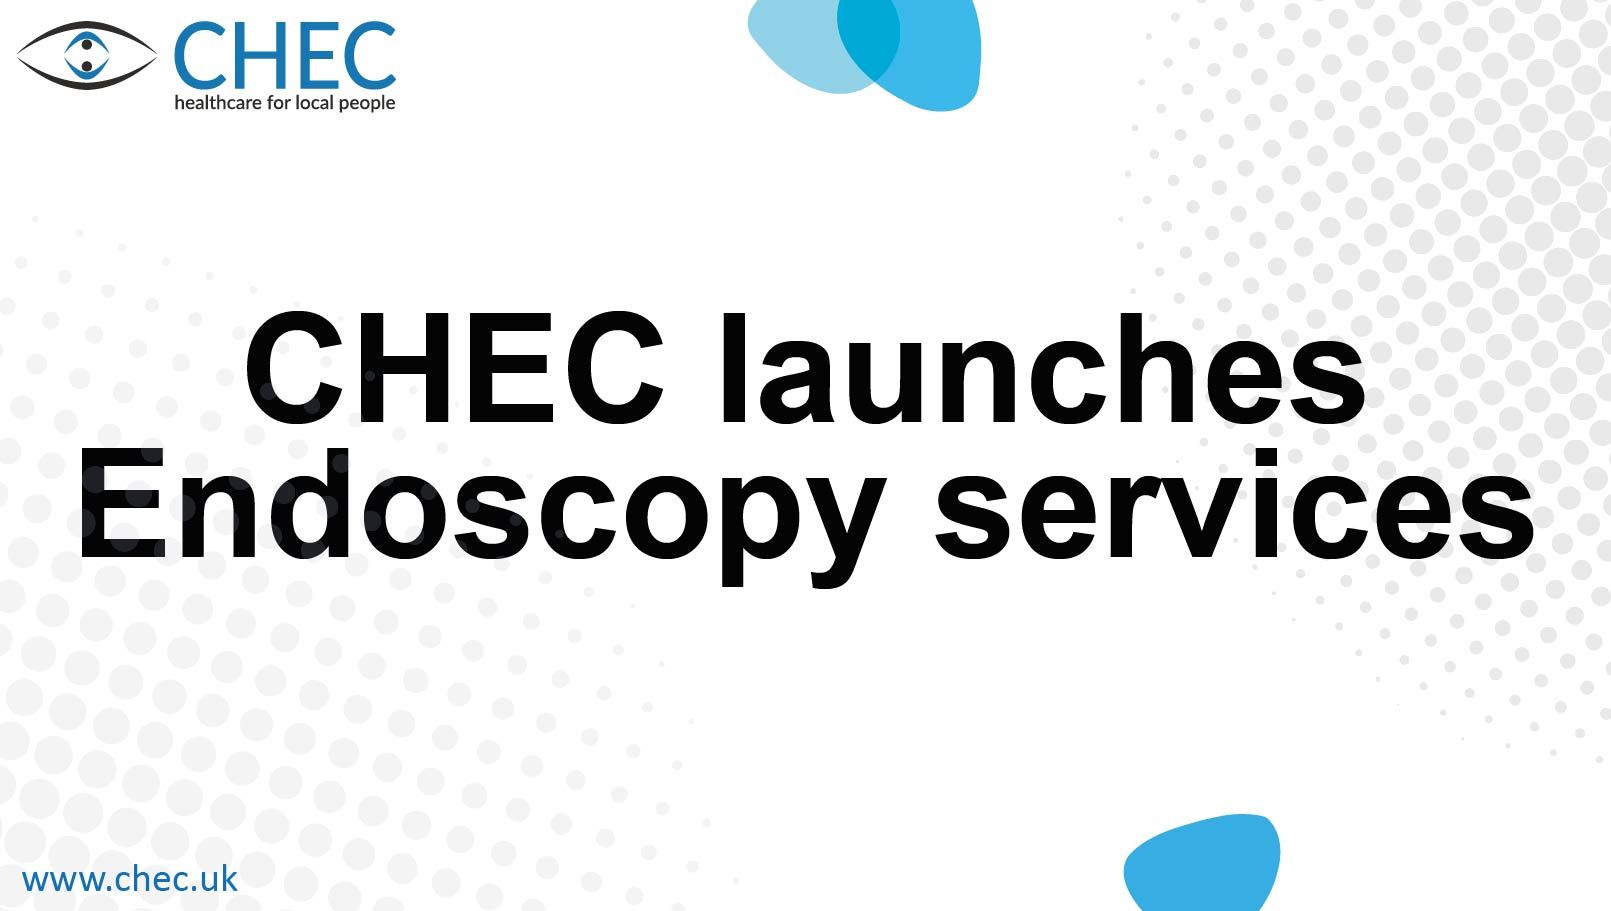 CHEC launches new endoscopy service